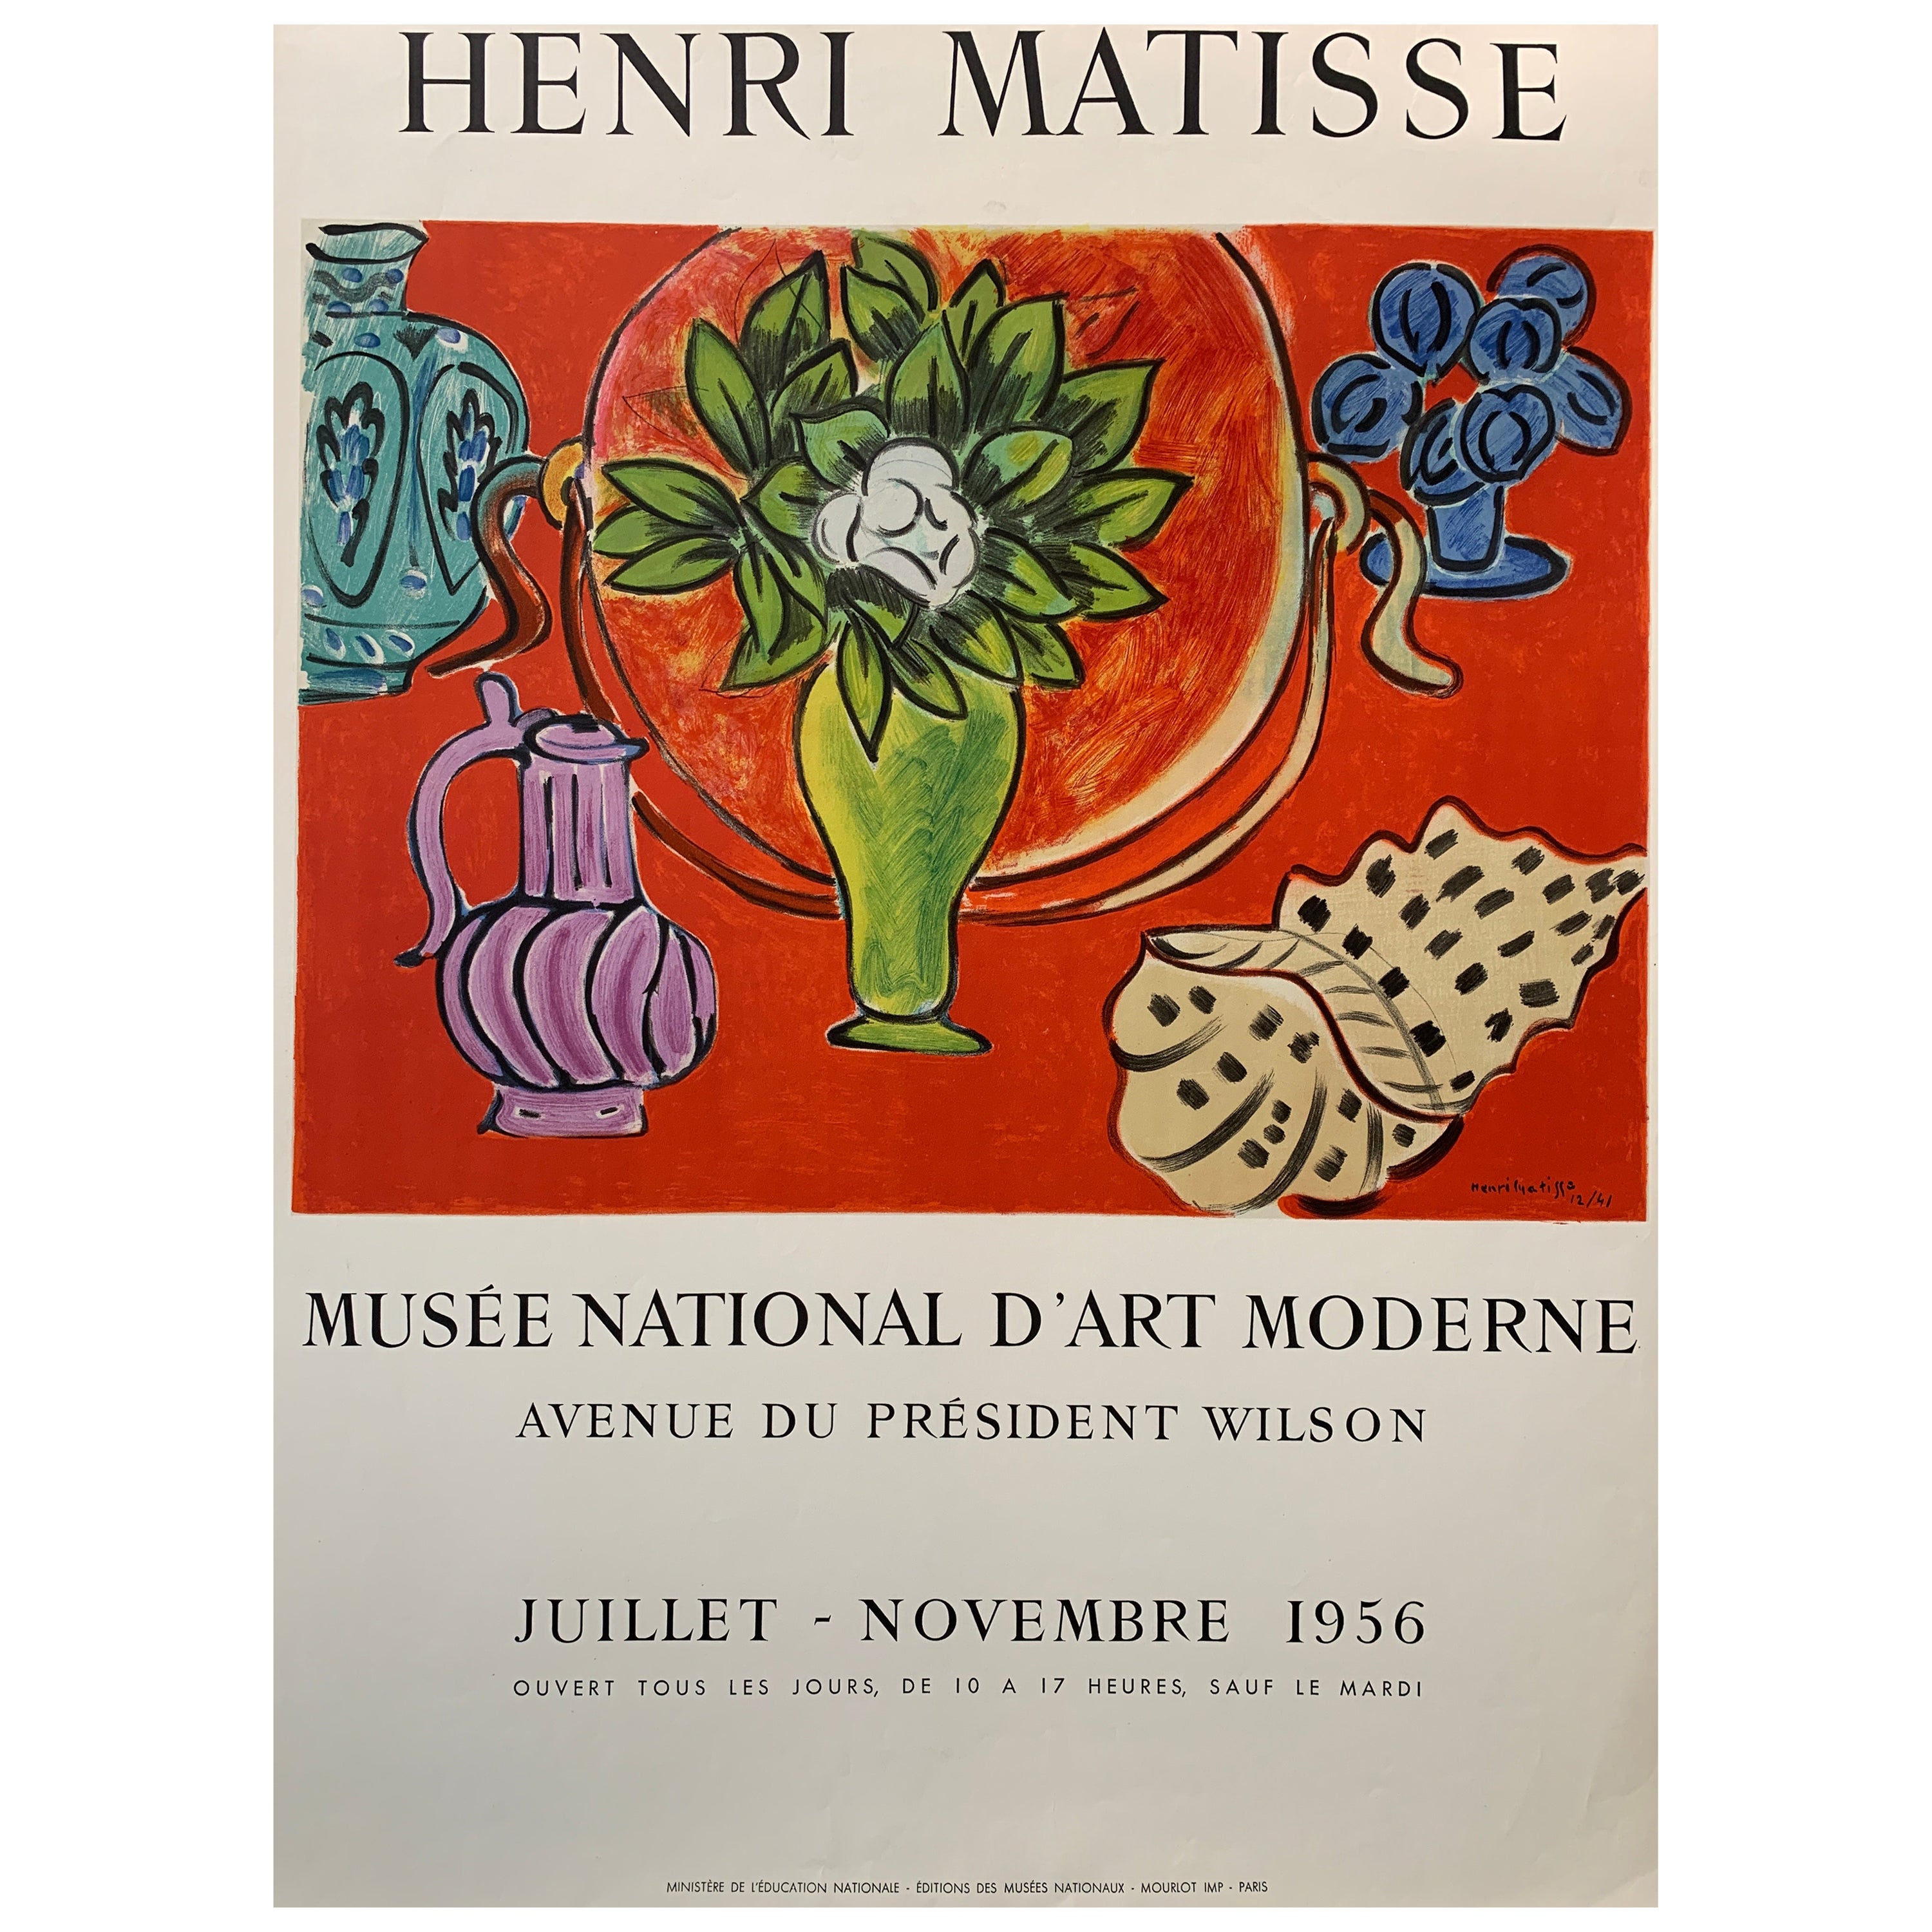 Henri Matisse, 'Musee National D'art Moderne' Original-Ausstellungsplakat, 1956